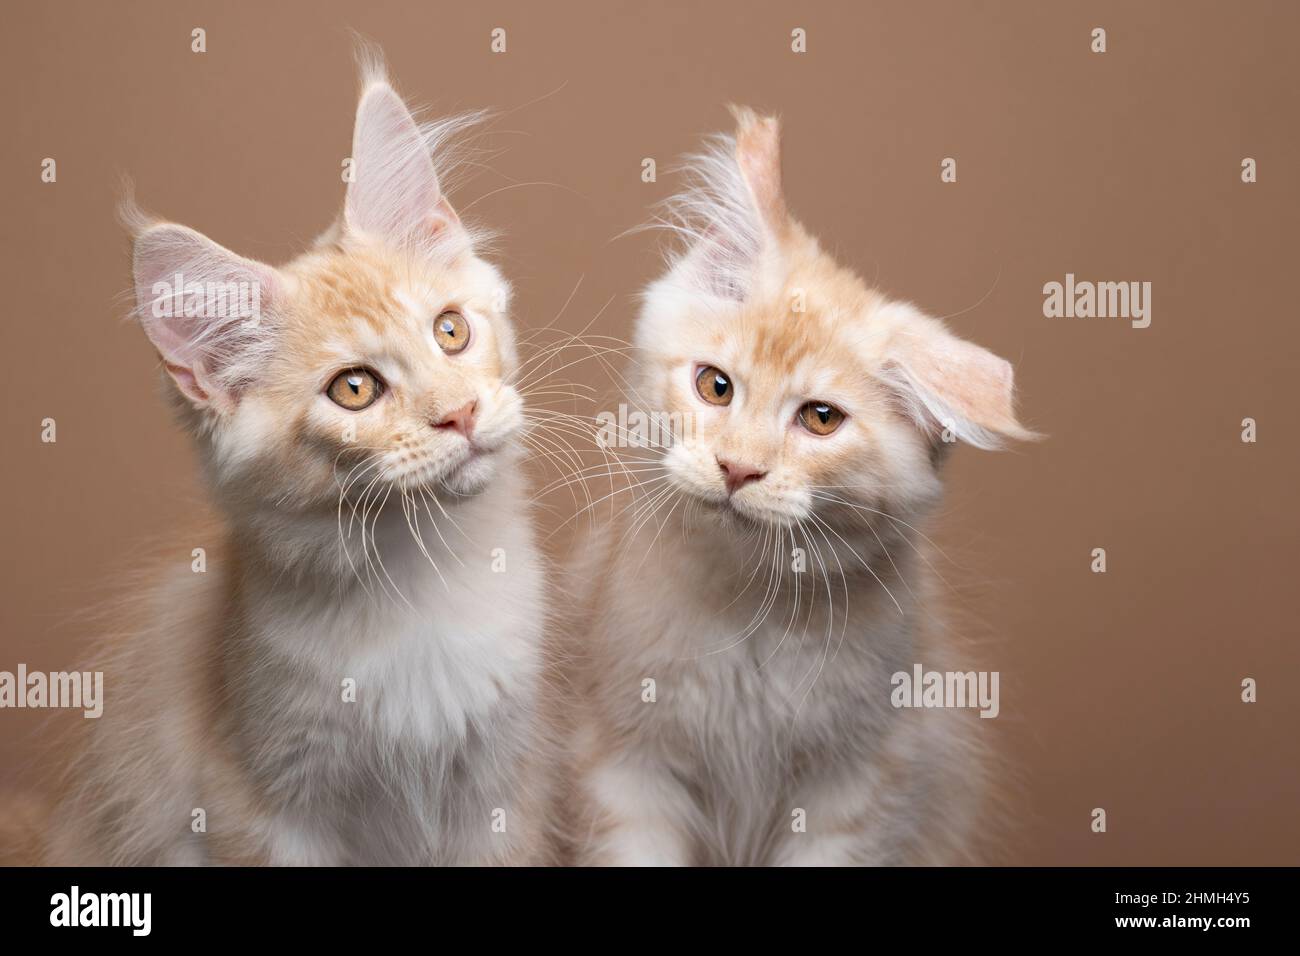 deux frères et sœurs de maine coon chaton côte à côte sur fond marron. un chat secoue la tête en regardant drôle Banque D'Images